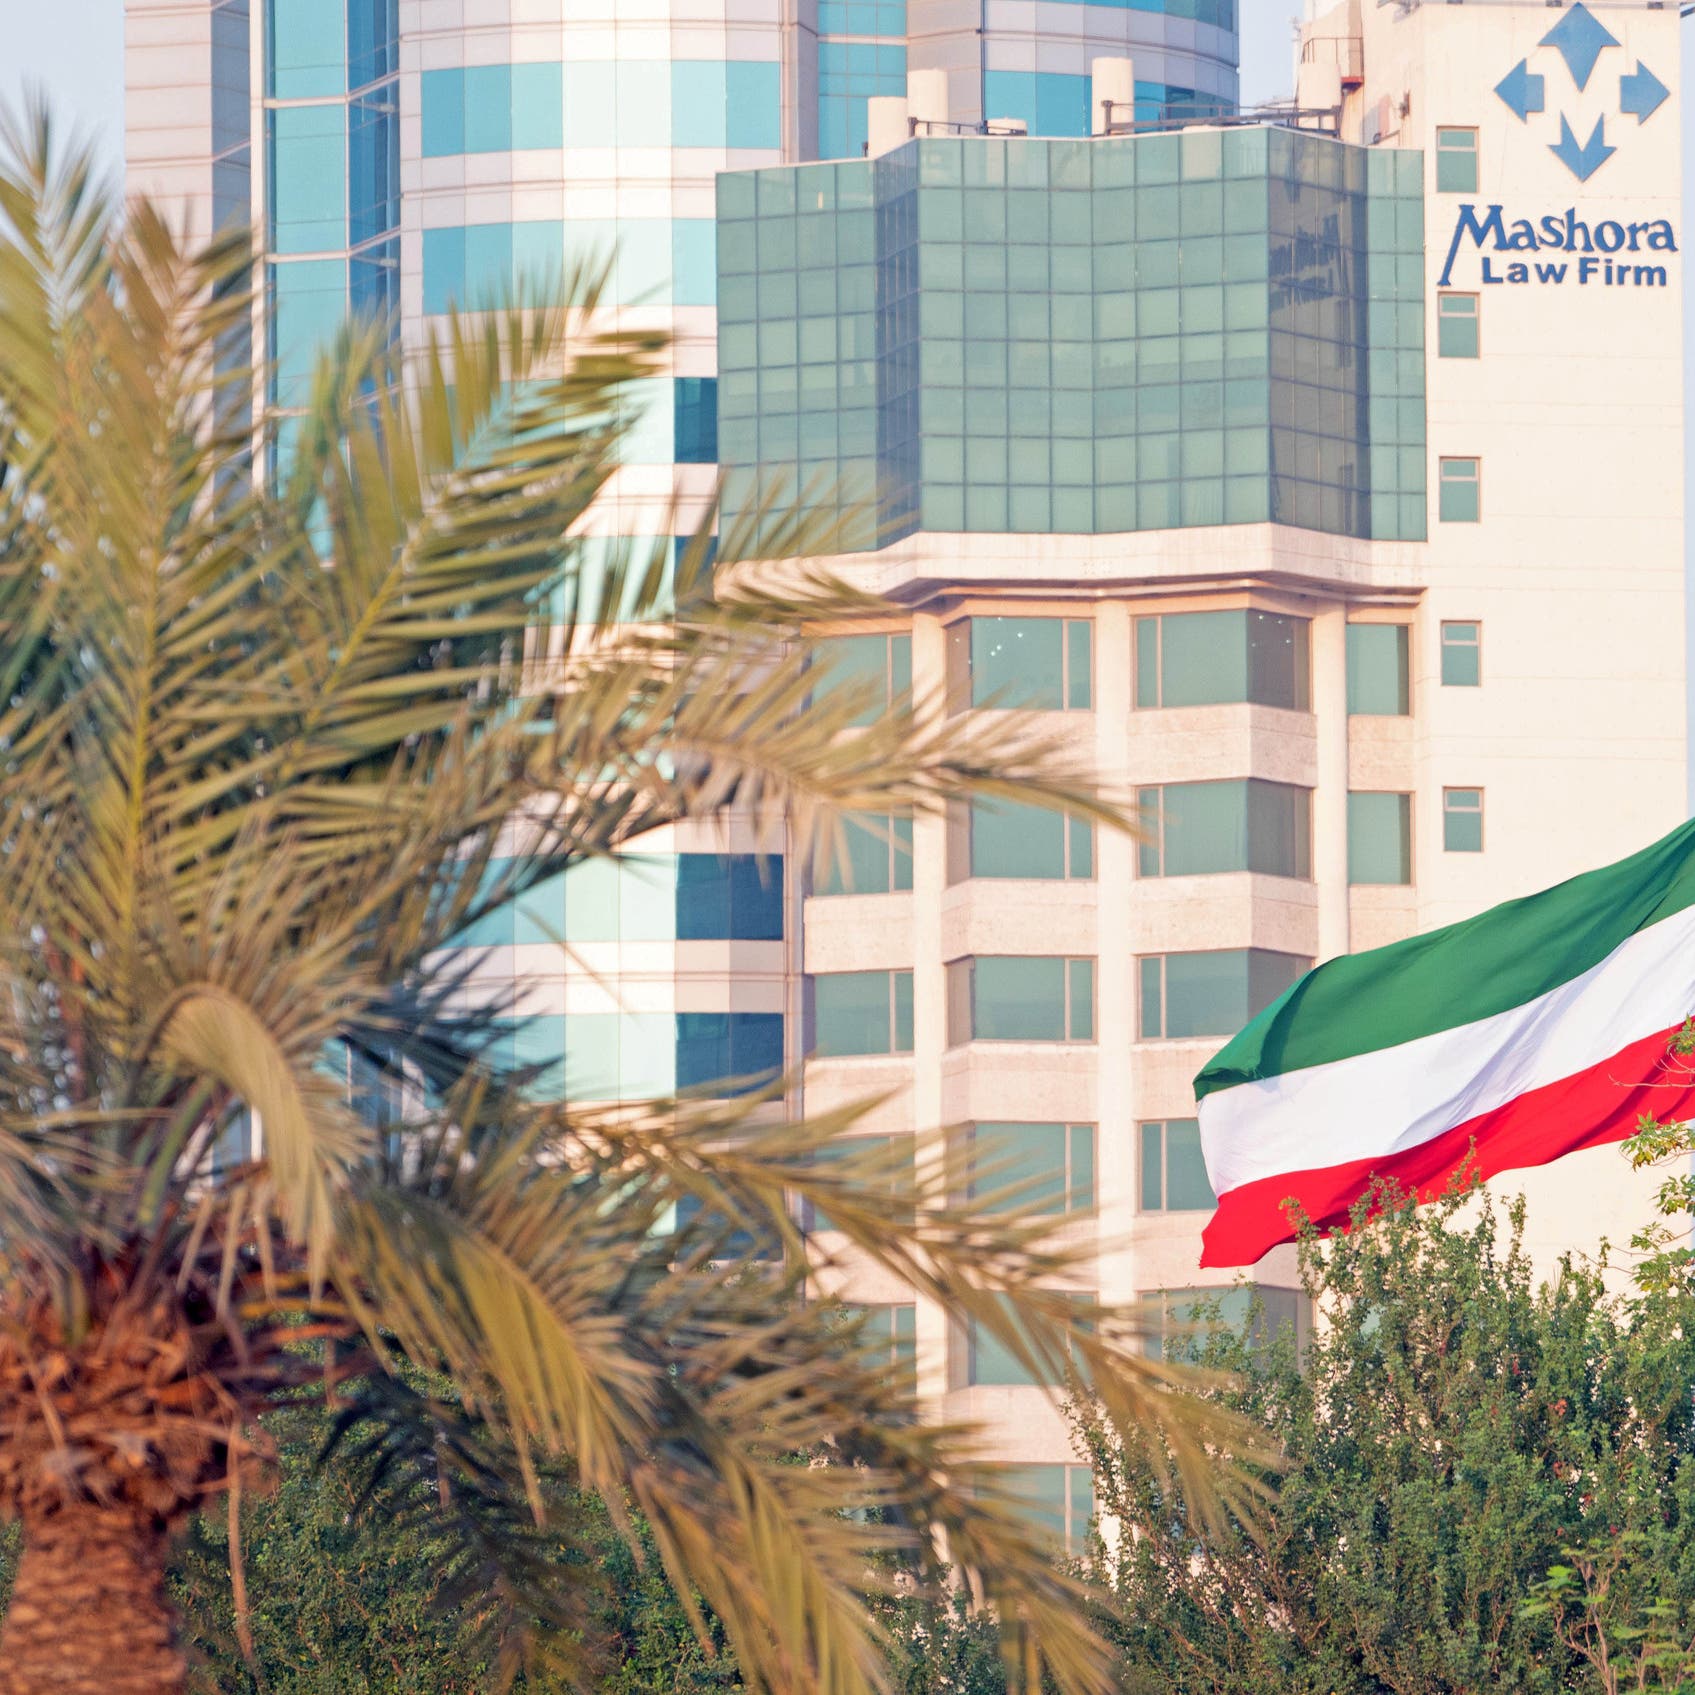 مصادر: استثمارات الاحتياطي العام في الكويت انخفضت 9.8 مليار دولار